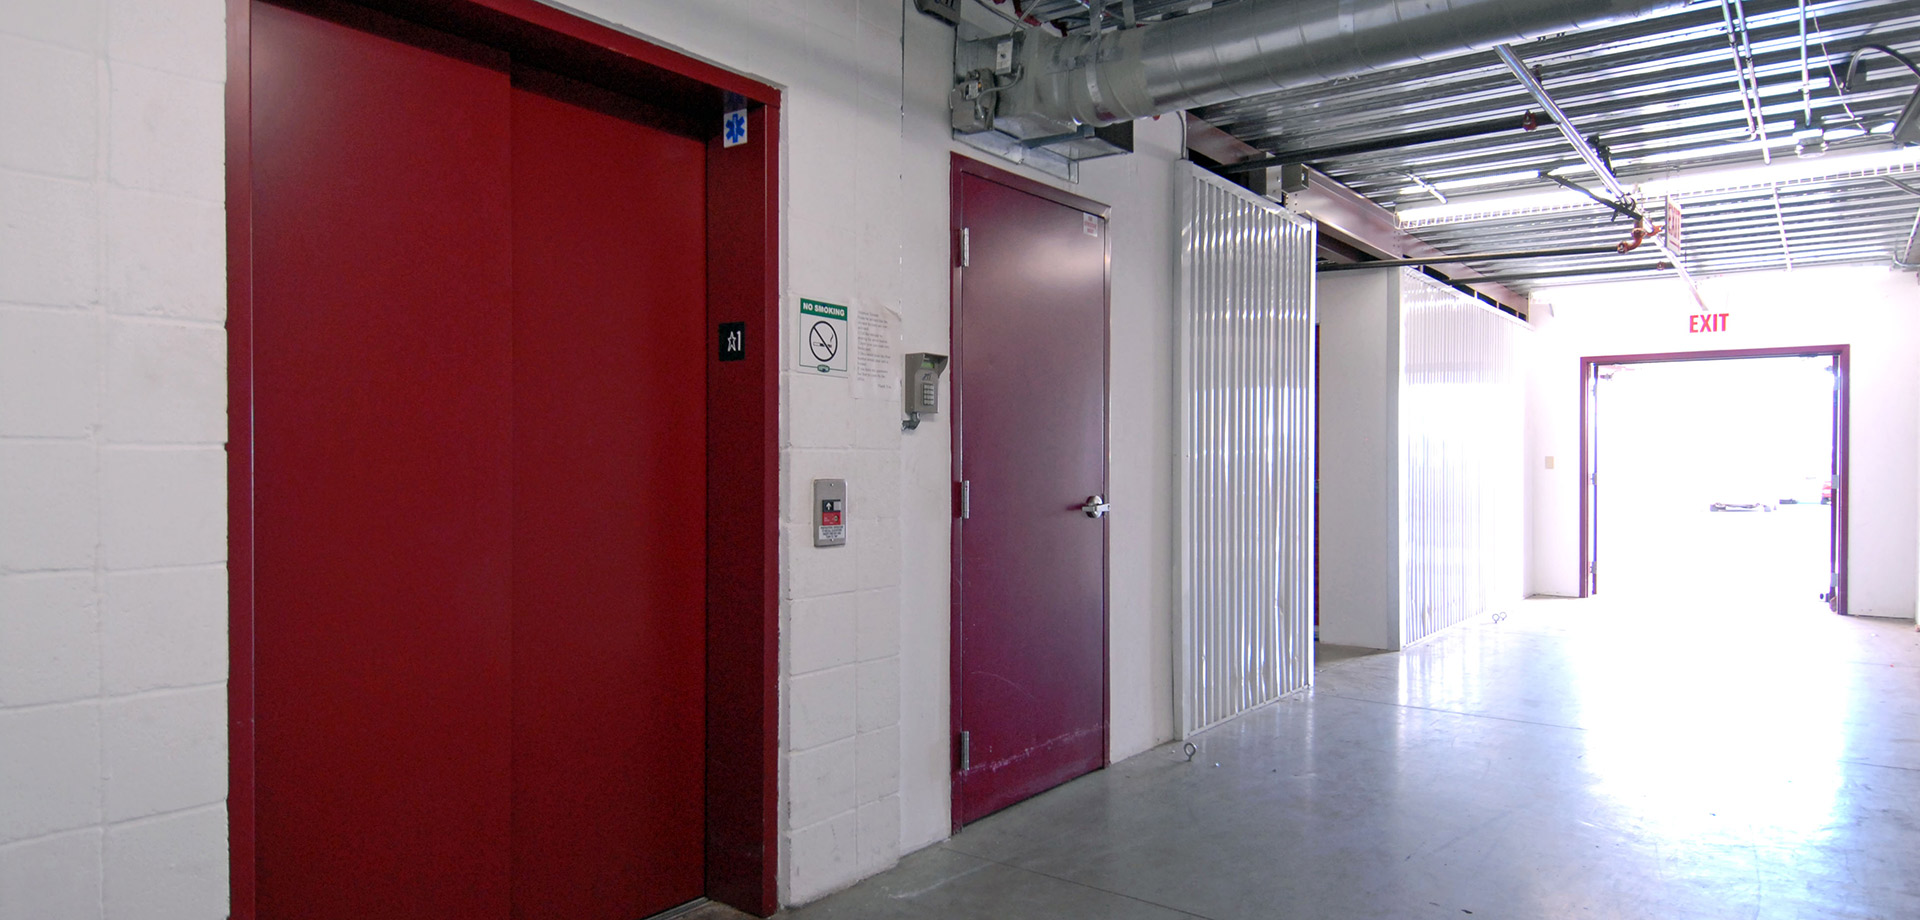 Encino Self Storage Elevator and Exit